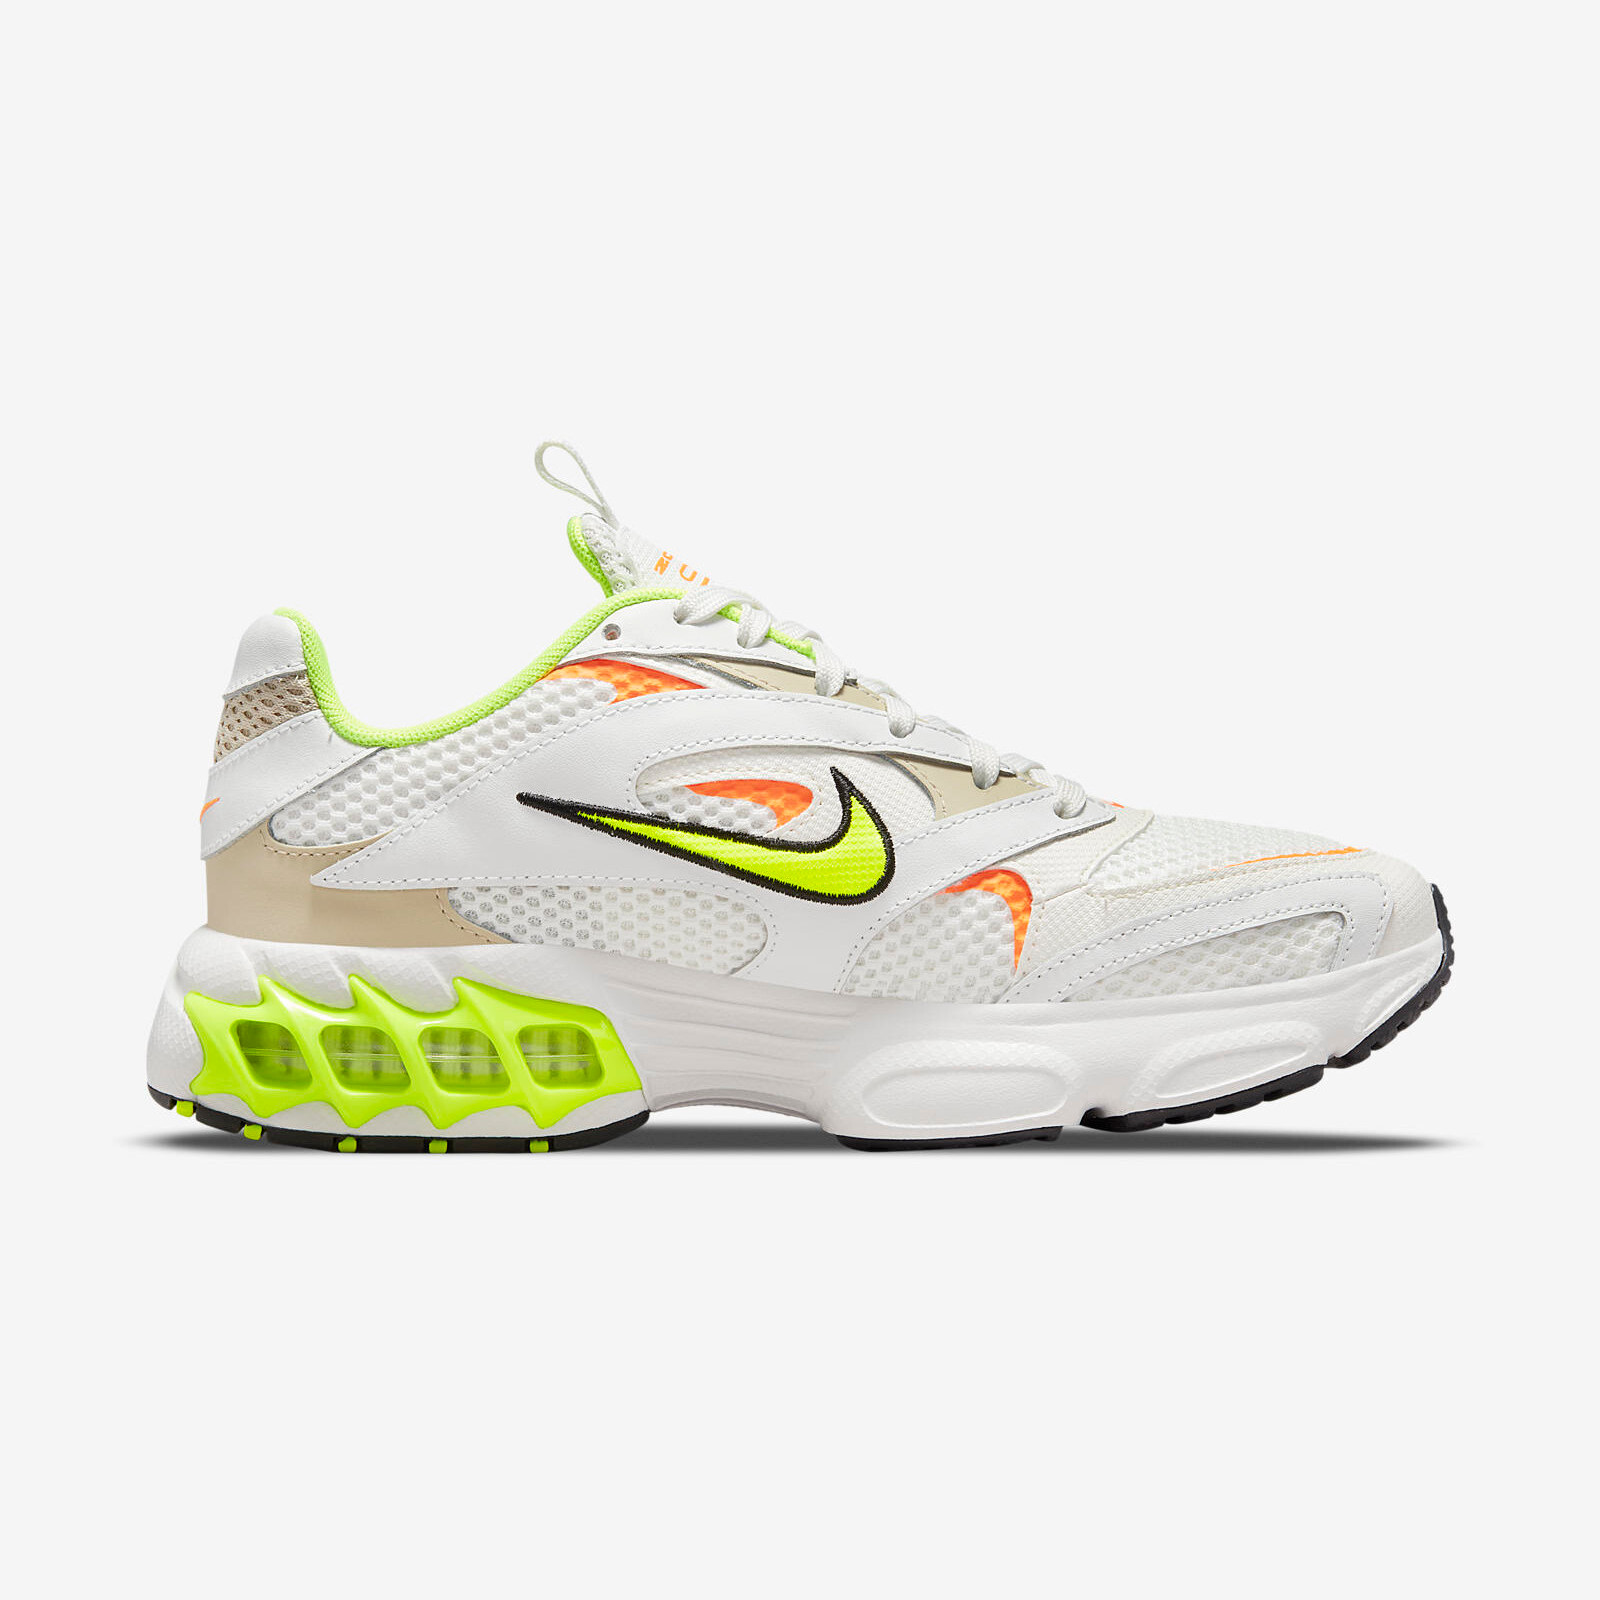 Nike Zoom Air Fire
White / Volt